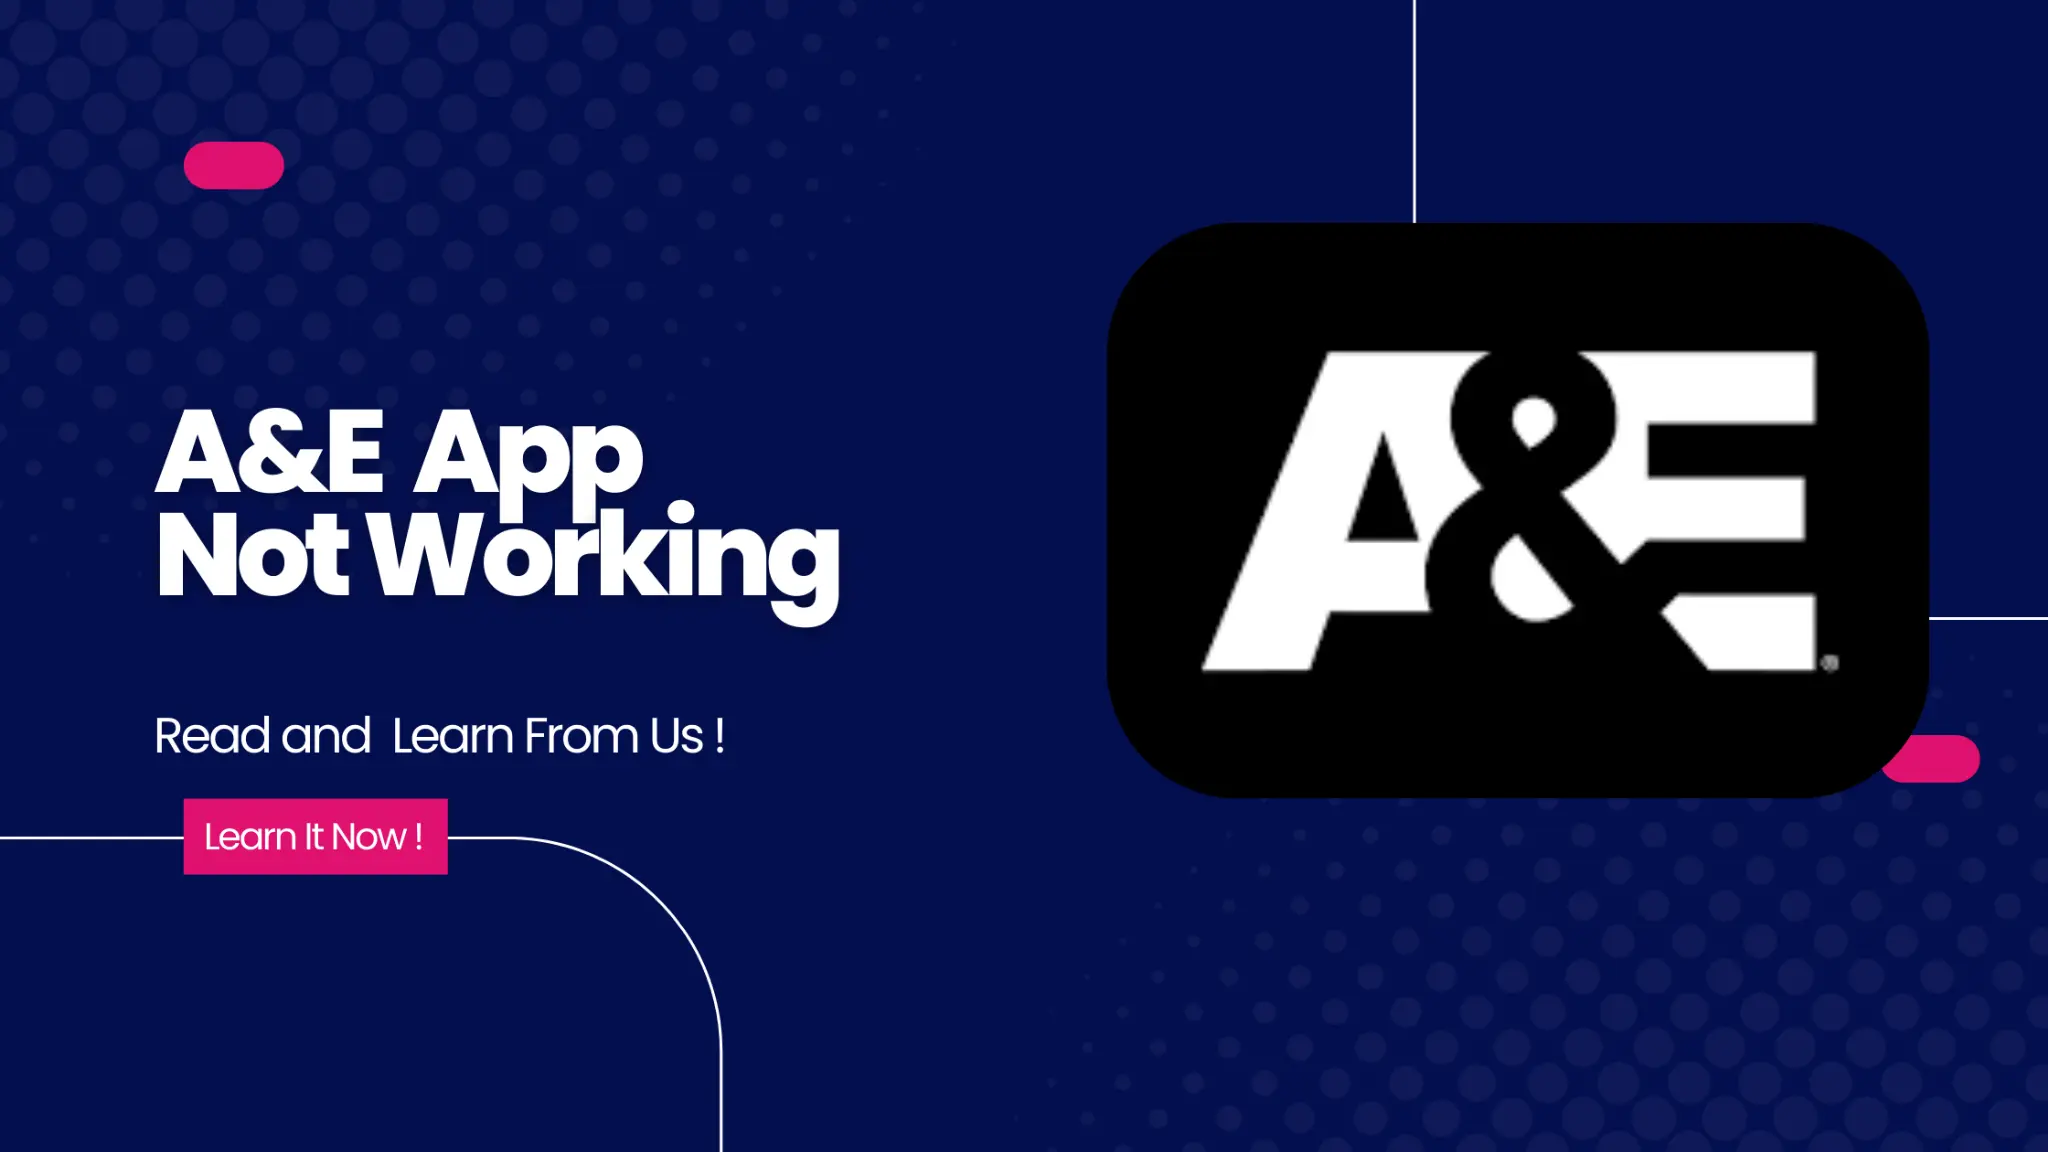 A&E App Not Working?